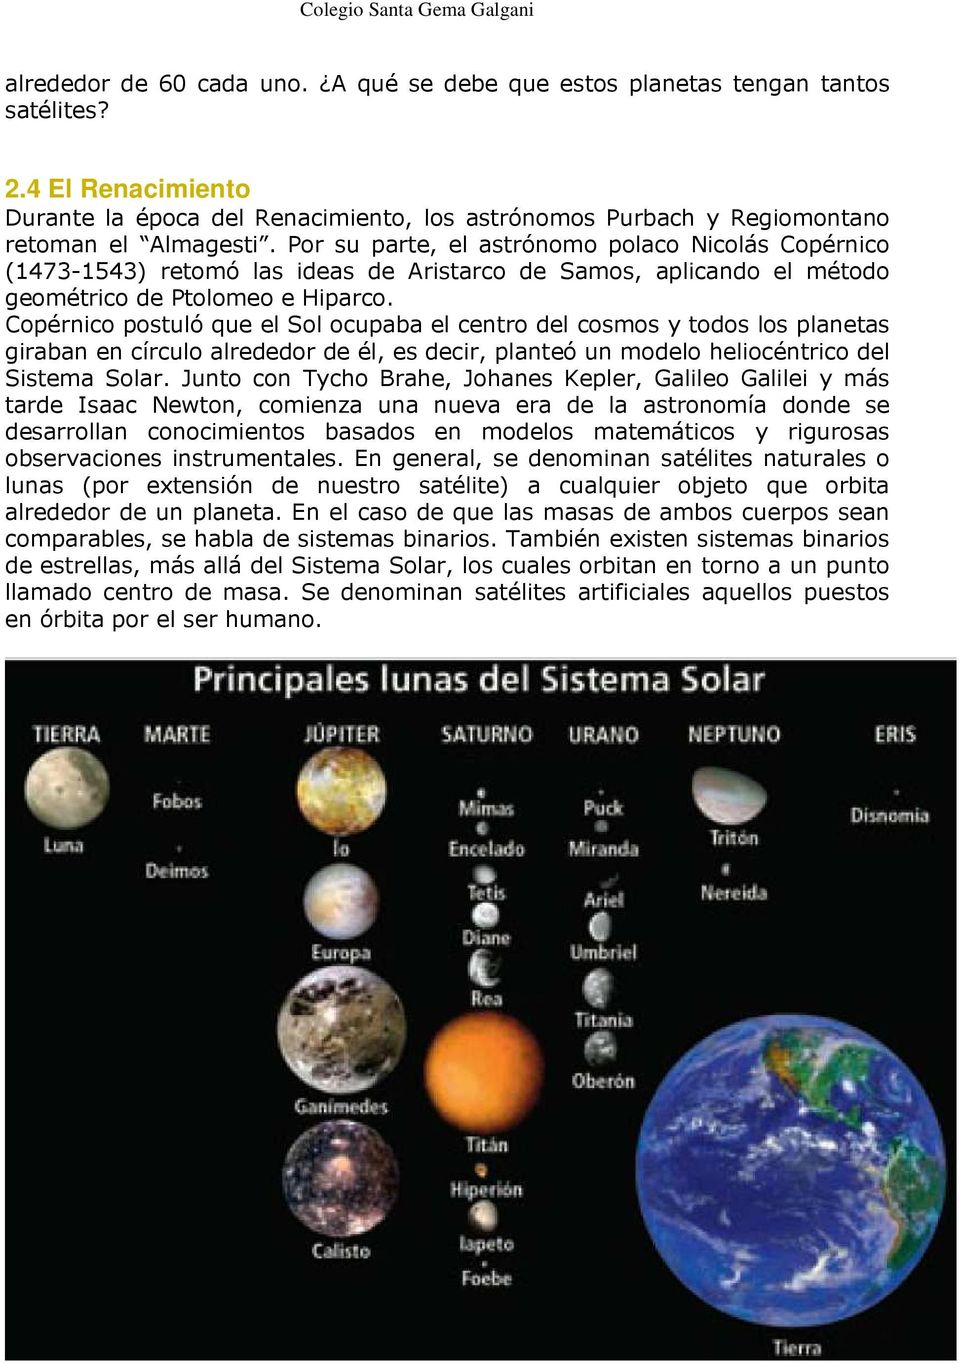 Copérnico postuló que el Sol ocupaba el centro del cosmos y todos los planetas giraban en círculo alrededor de él, es decir, planteó un modelo heliocéntrico del Sistema Solar.